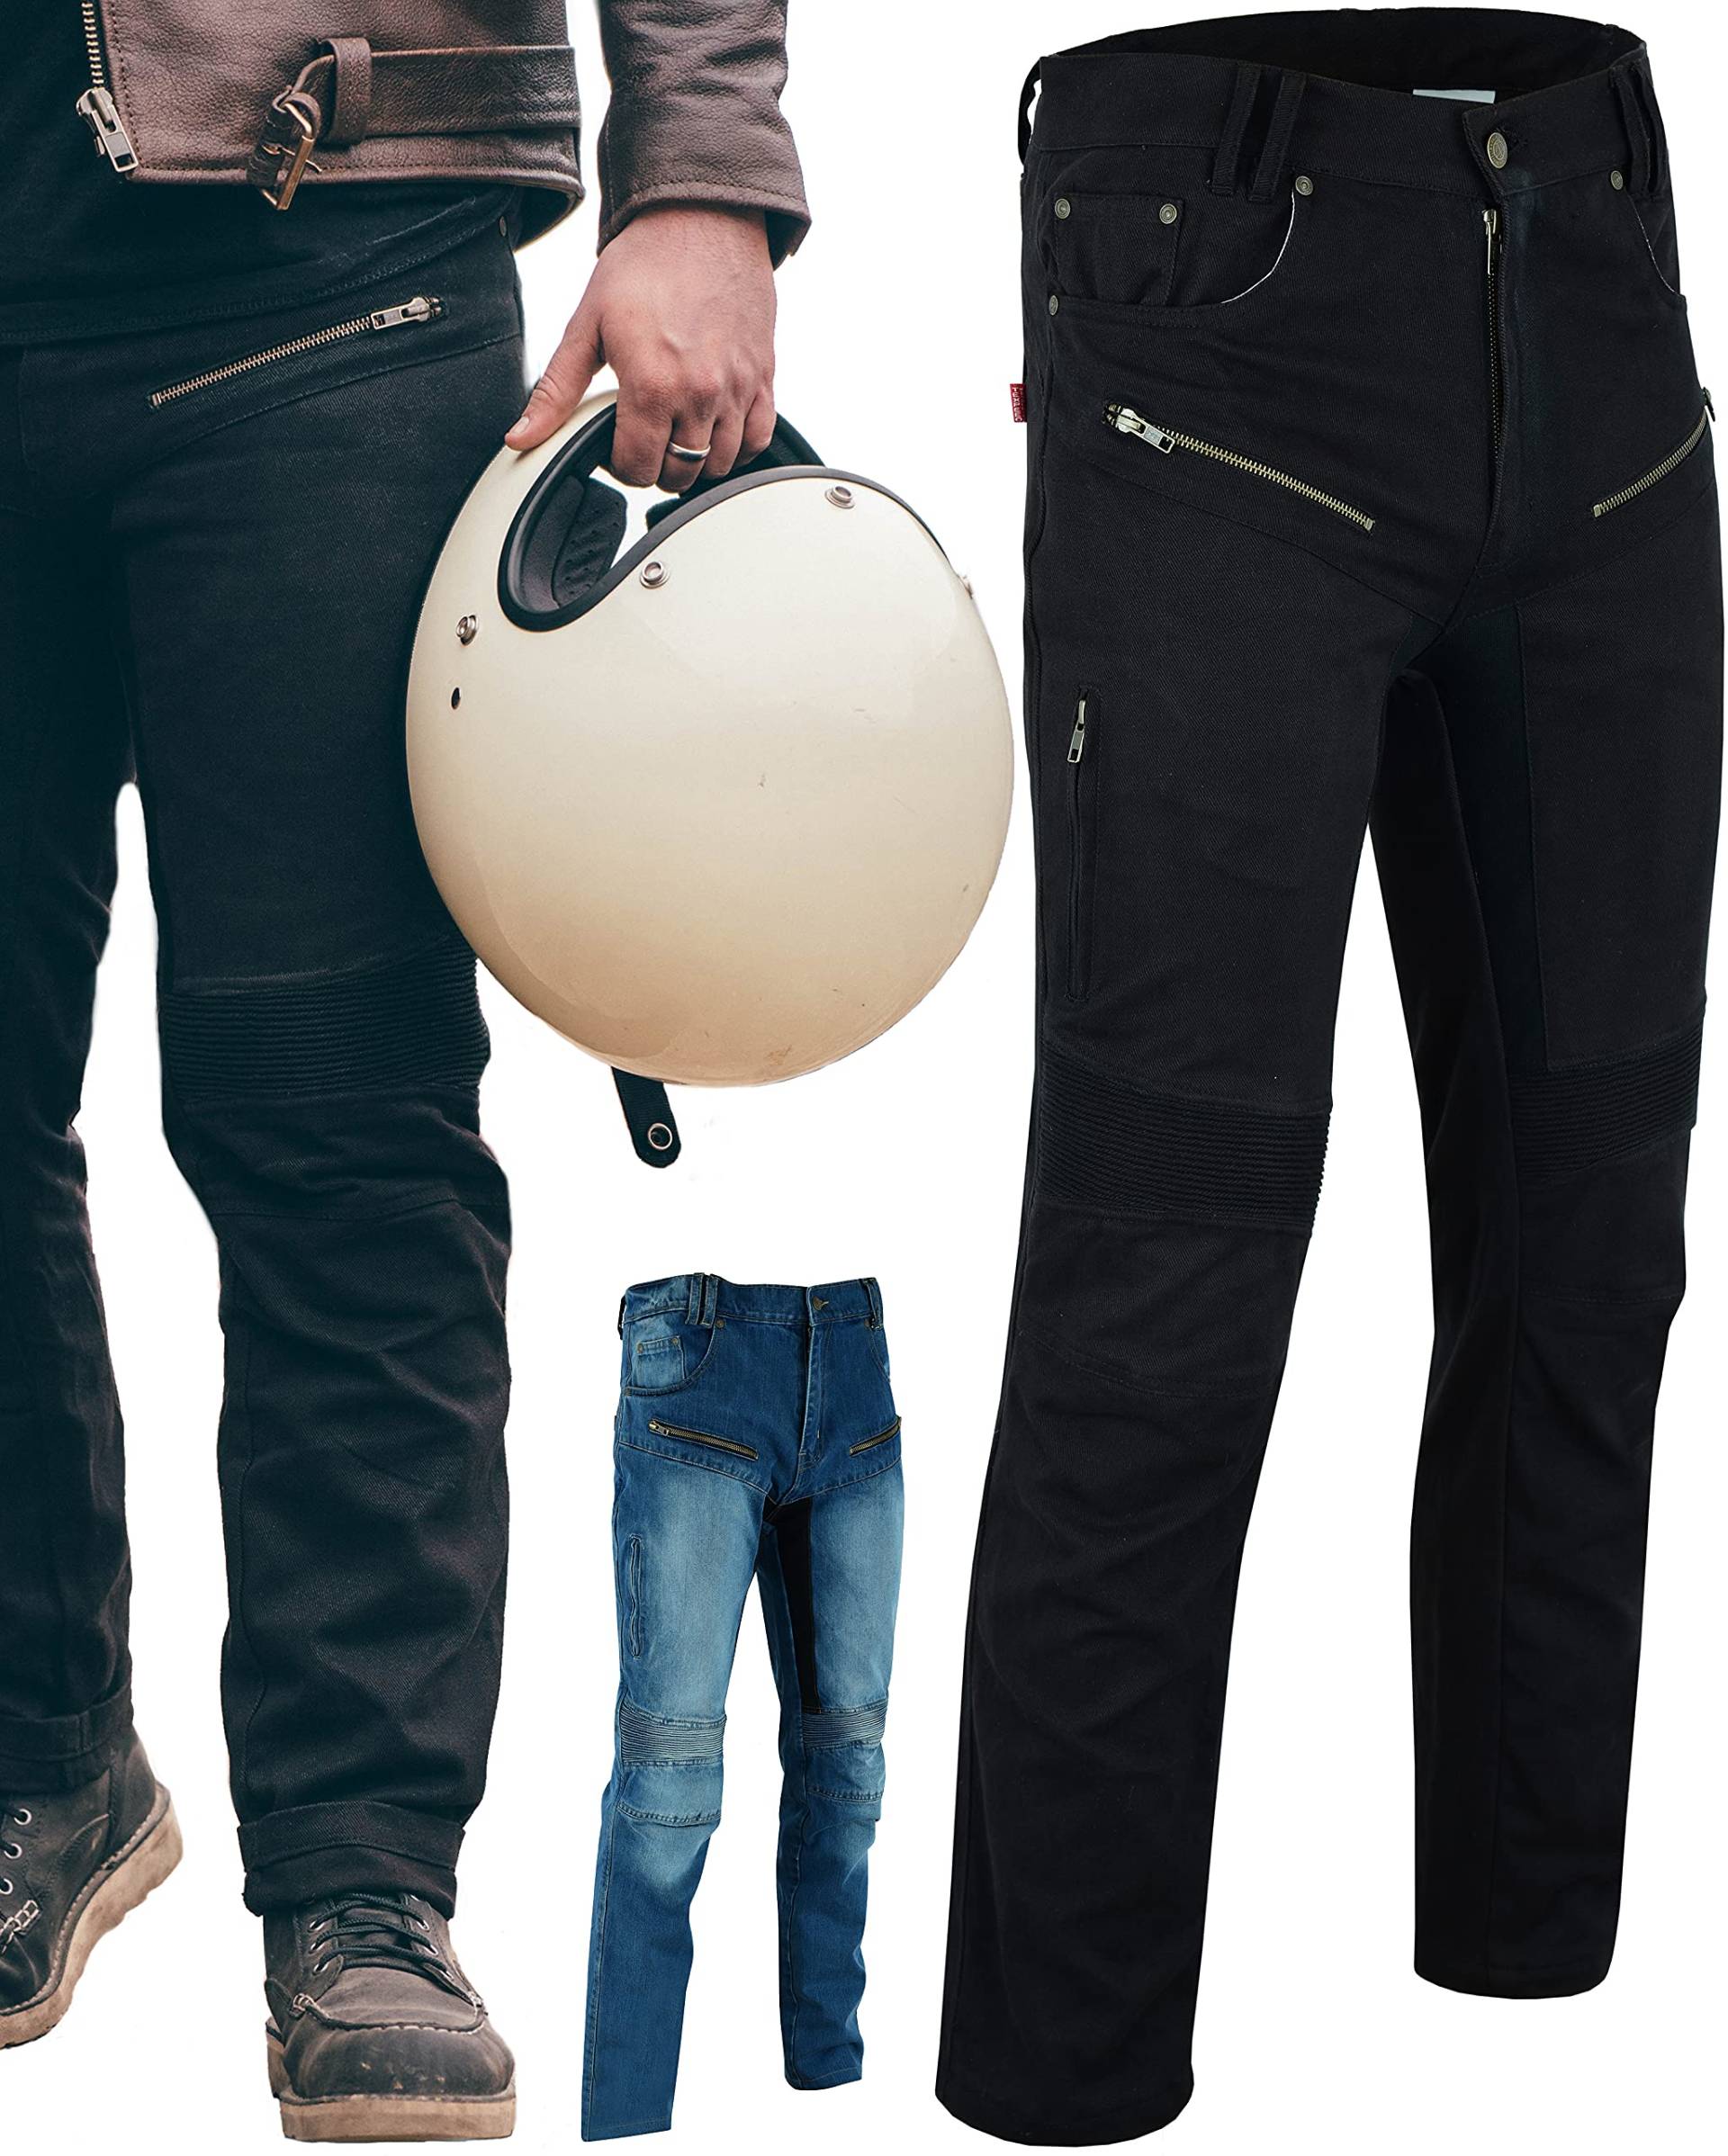 Texpeed Motorradhose mit Protektoren - Herren schwarz Motorrad schützende Jeans - Tapered Fit - Rüstung enthalten (EN 1621-1) - Schwarz: XL Taille/Lang Bein von Texpeed